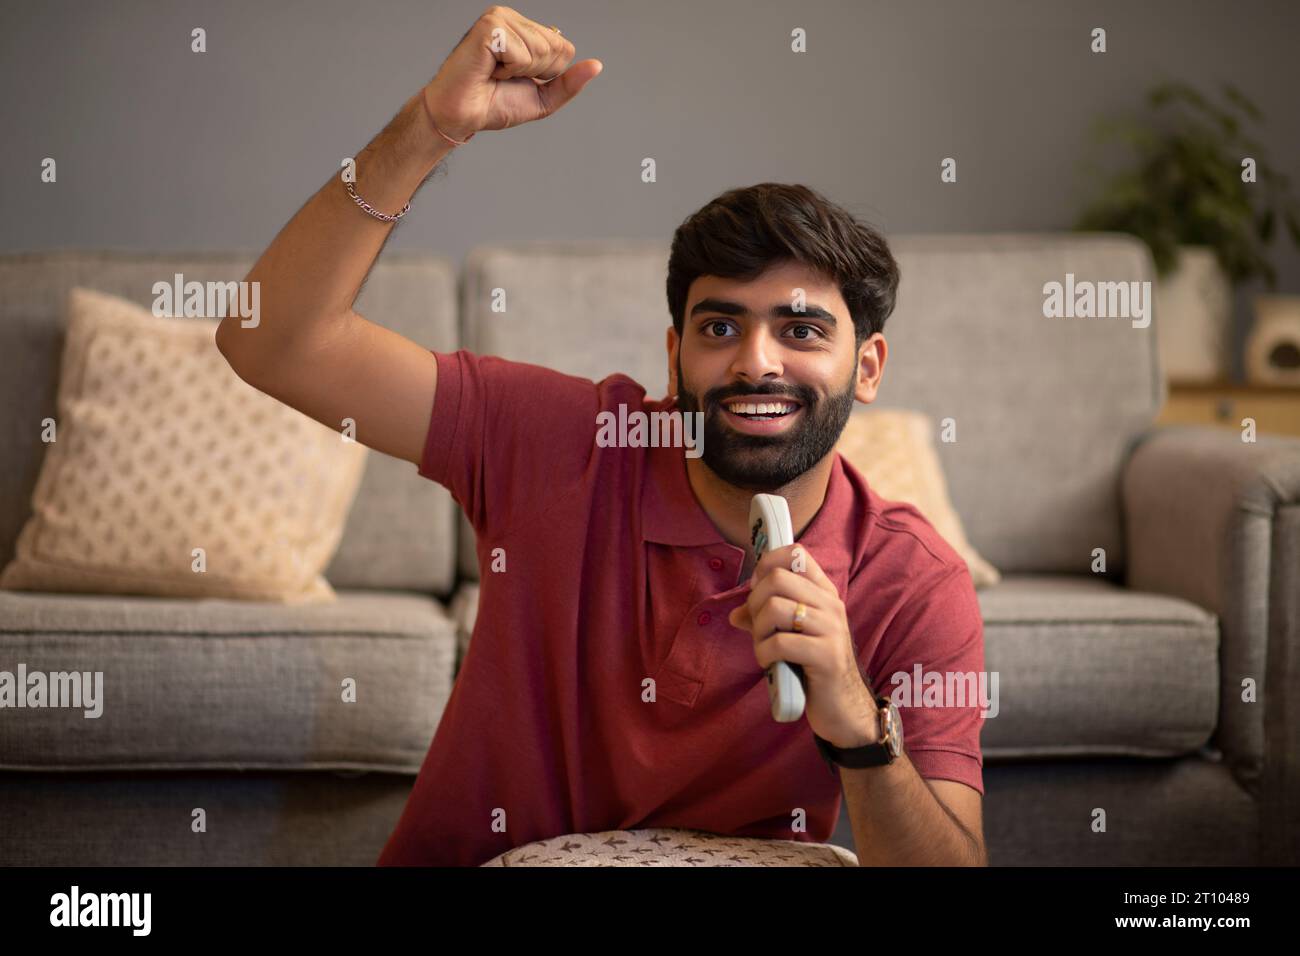 Porträt eines aufgeregten jungen Mannes, der beim Fernsehen im Wohnzimmer anfeuert Stockfoto